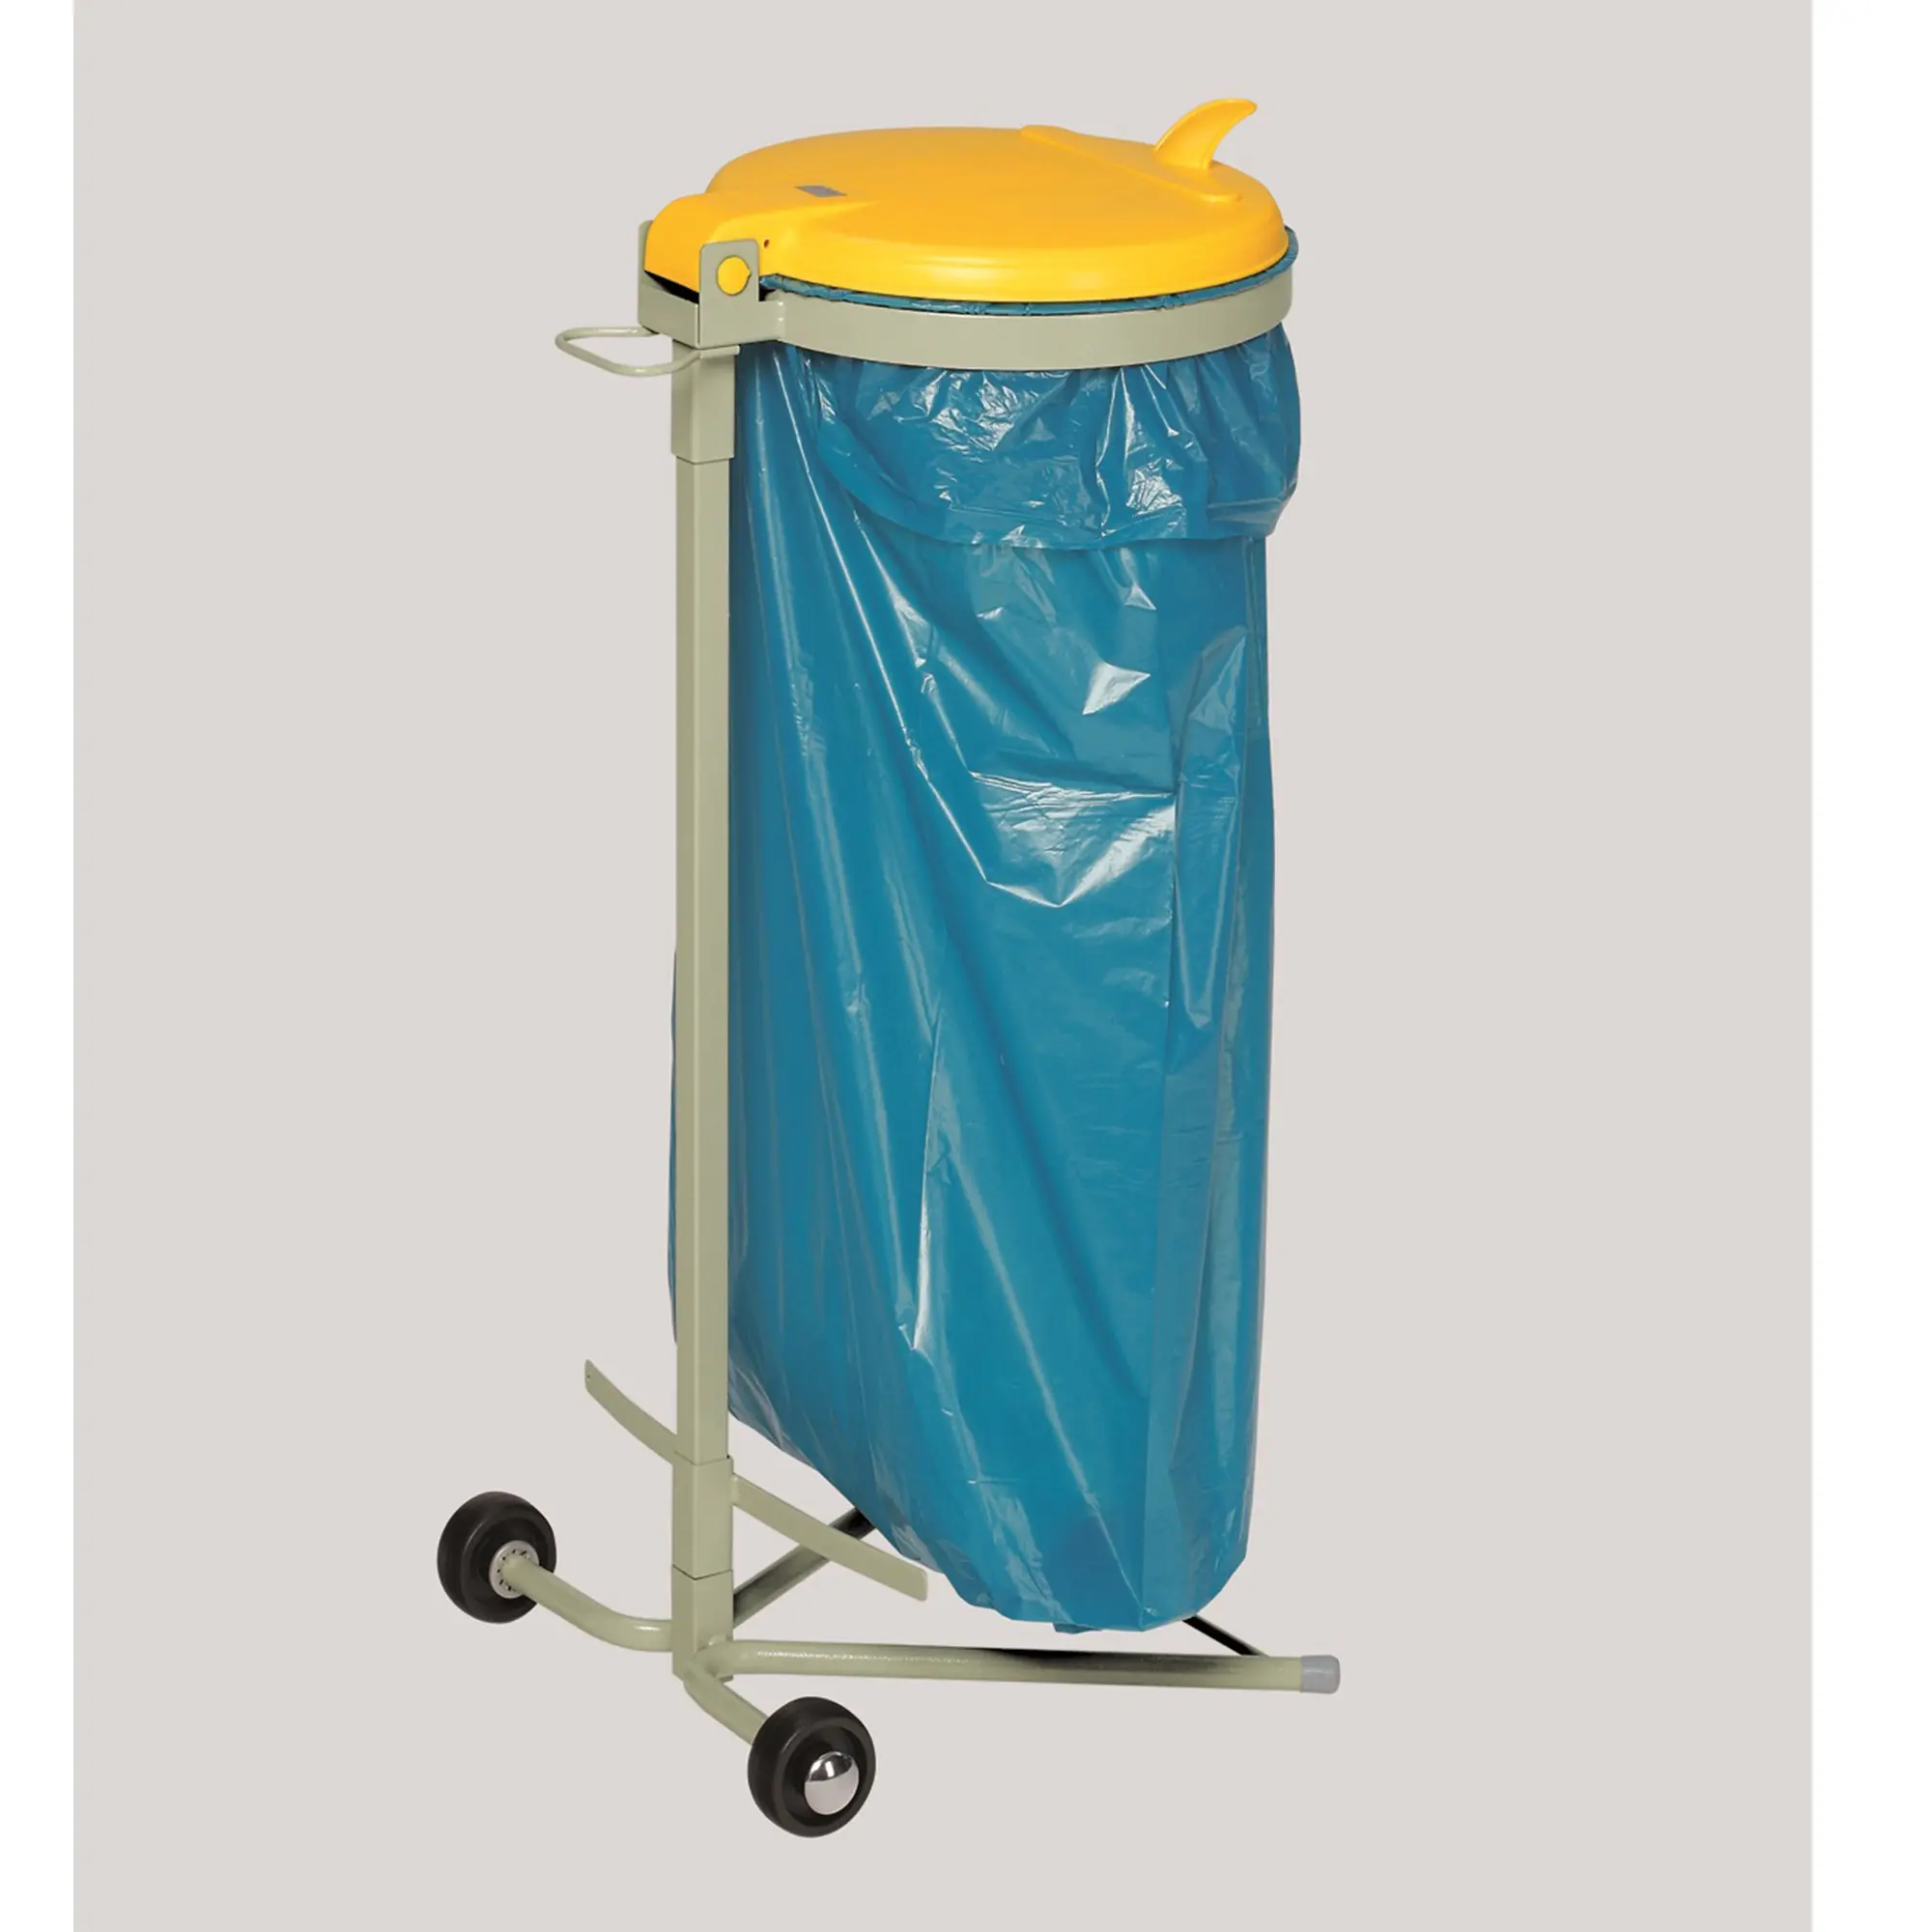 VAR Abfallsammler WSR120, fahrbar, 120 Liter gelb freistehender Müllsackständer 1640